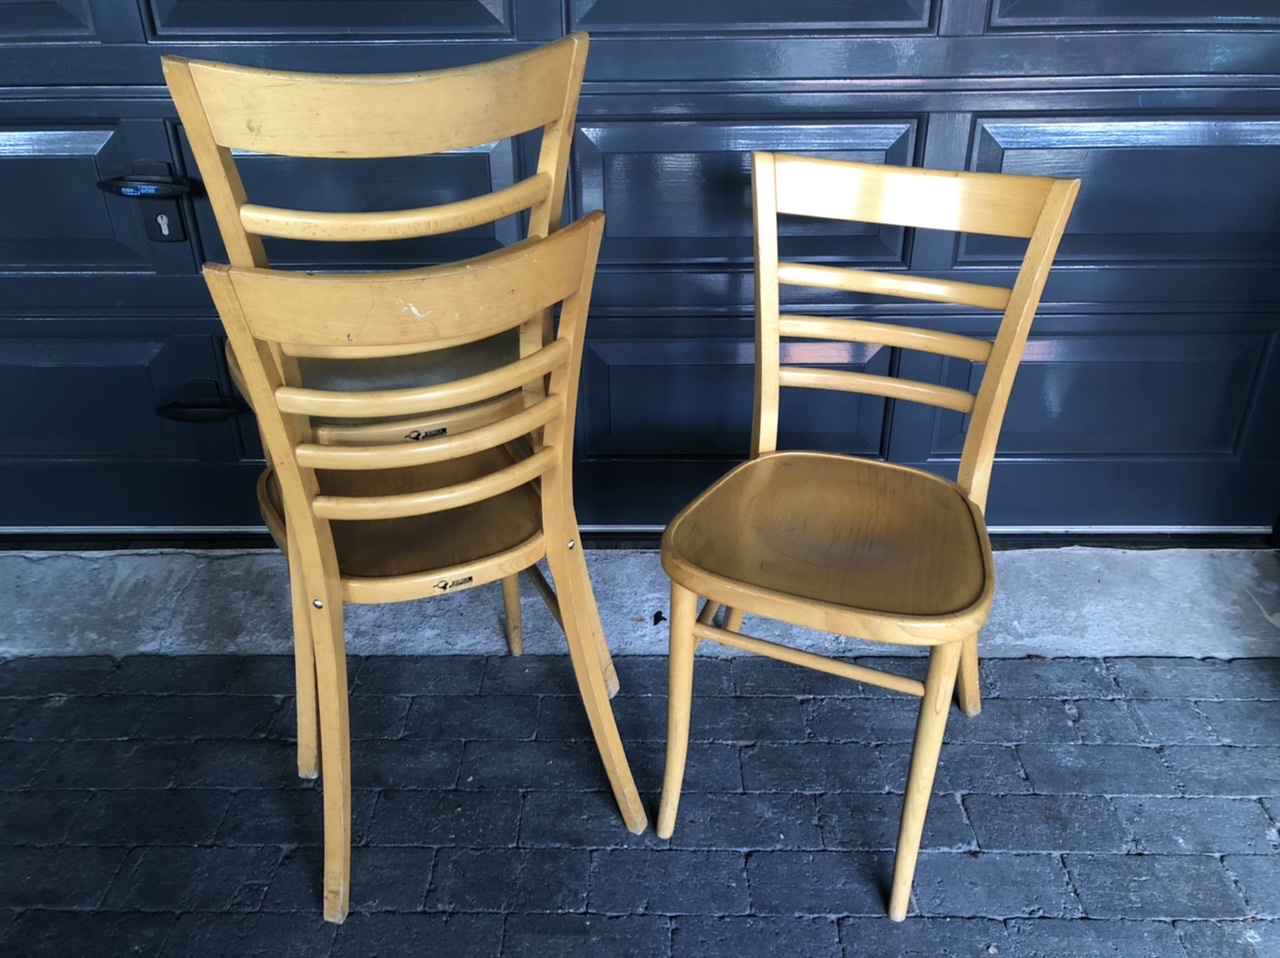 Jordaan stoelen de parel meubilair amsterdam apeldoorn gebruikte horeca cafestoelen